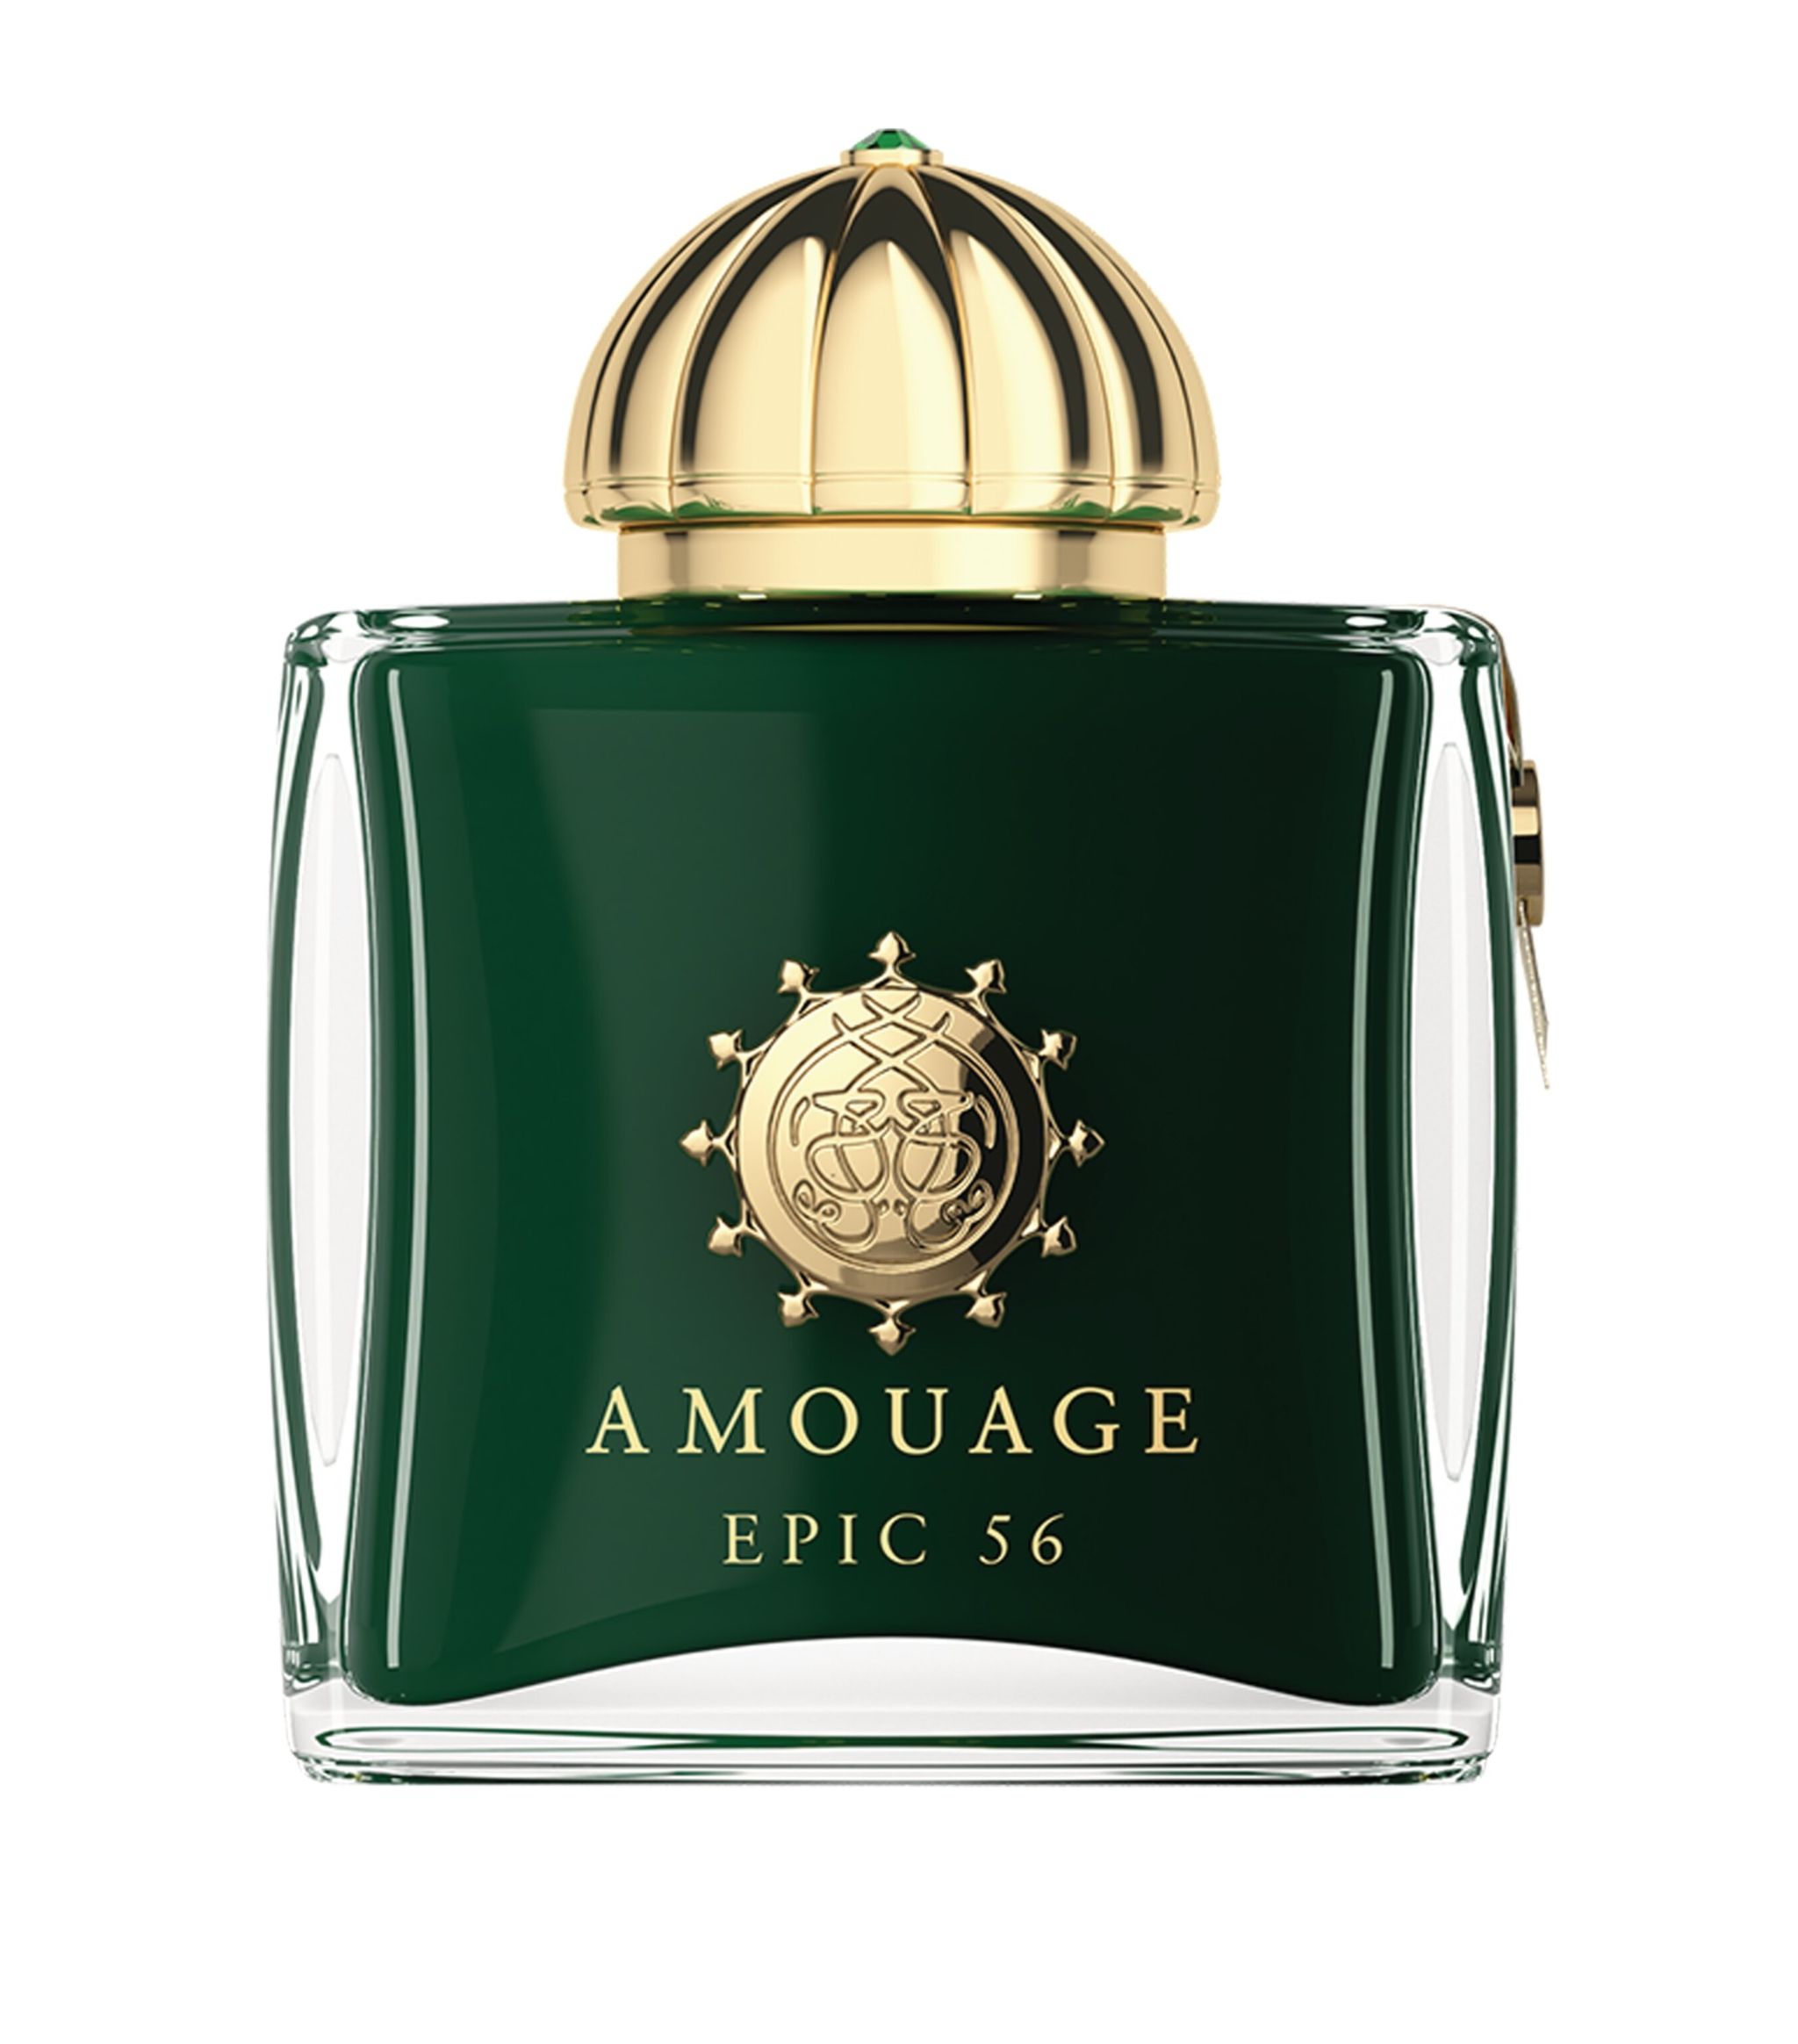 Amouage Epic 56 Woman extrait 5 ml NIŠINIAI kvepalų mėginukas (atomaizeris) Moterims Parfum